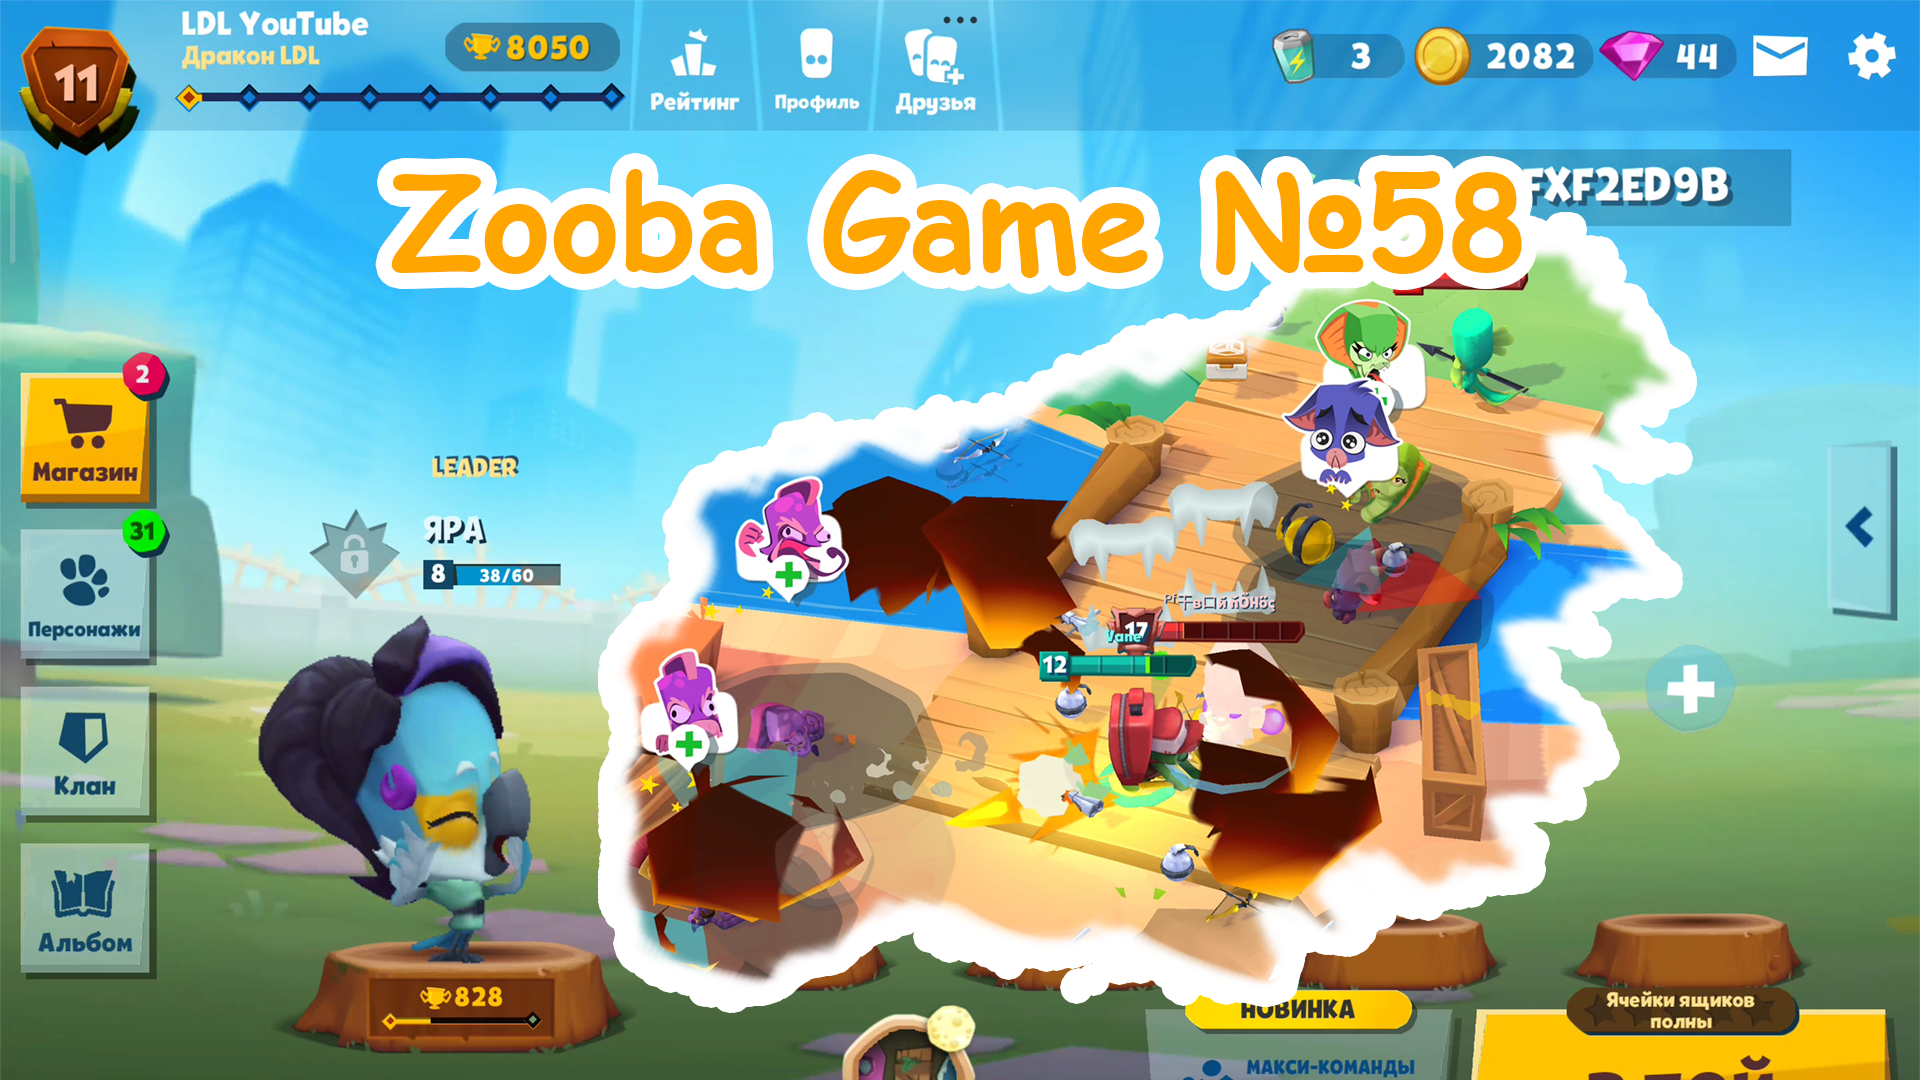 Zooba Game #58 #zooba